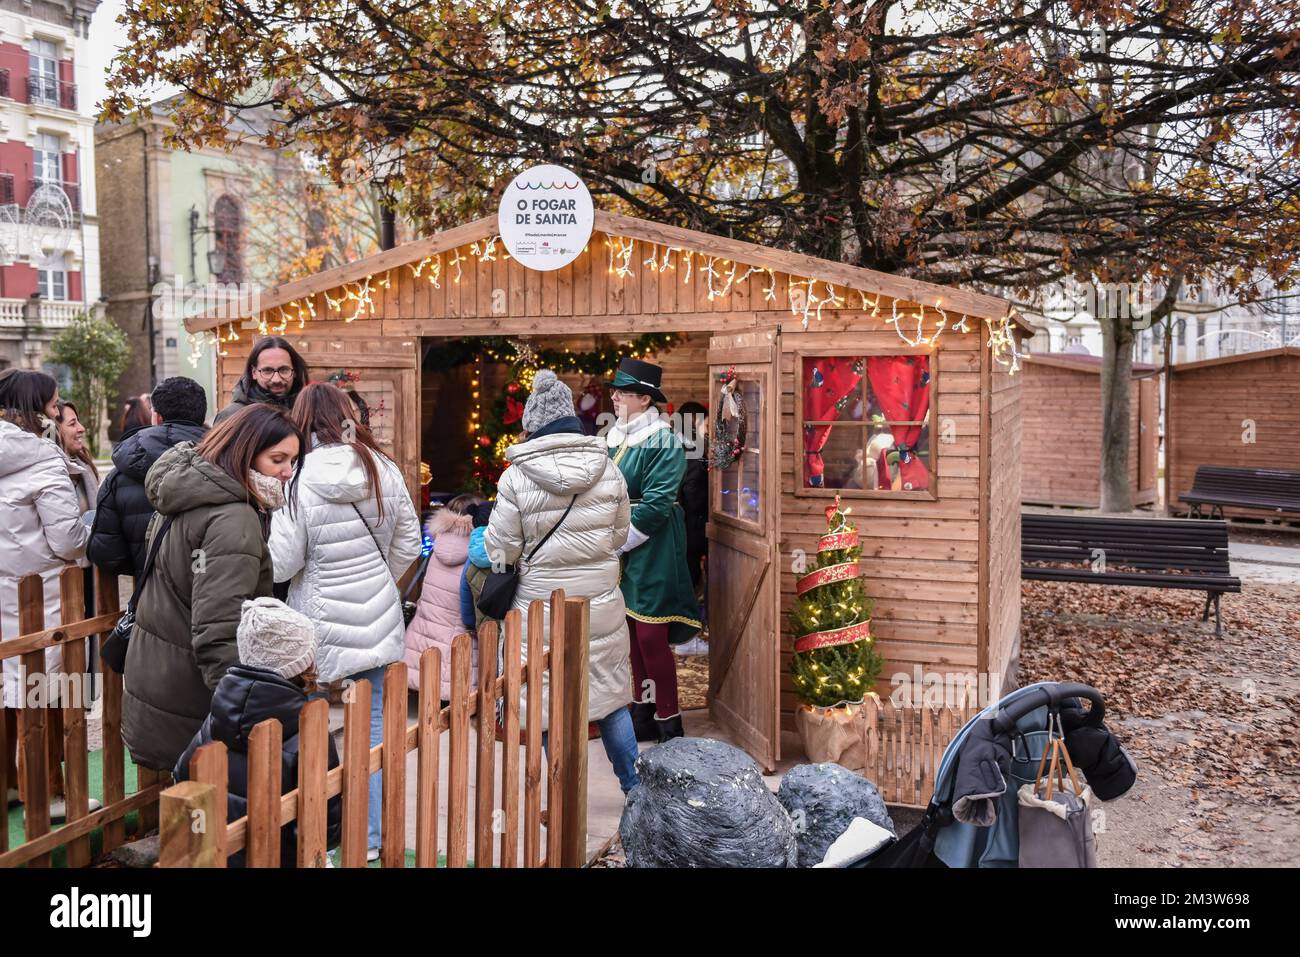 lugo, spagna. 9 dicembre 2022: attività e mercatino di natale nel parco con giochi tradizionali per bambini e adulti Foto Stock